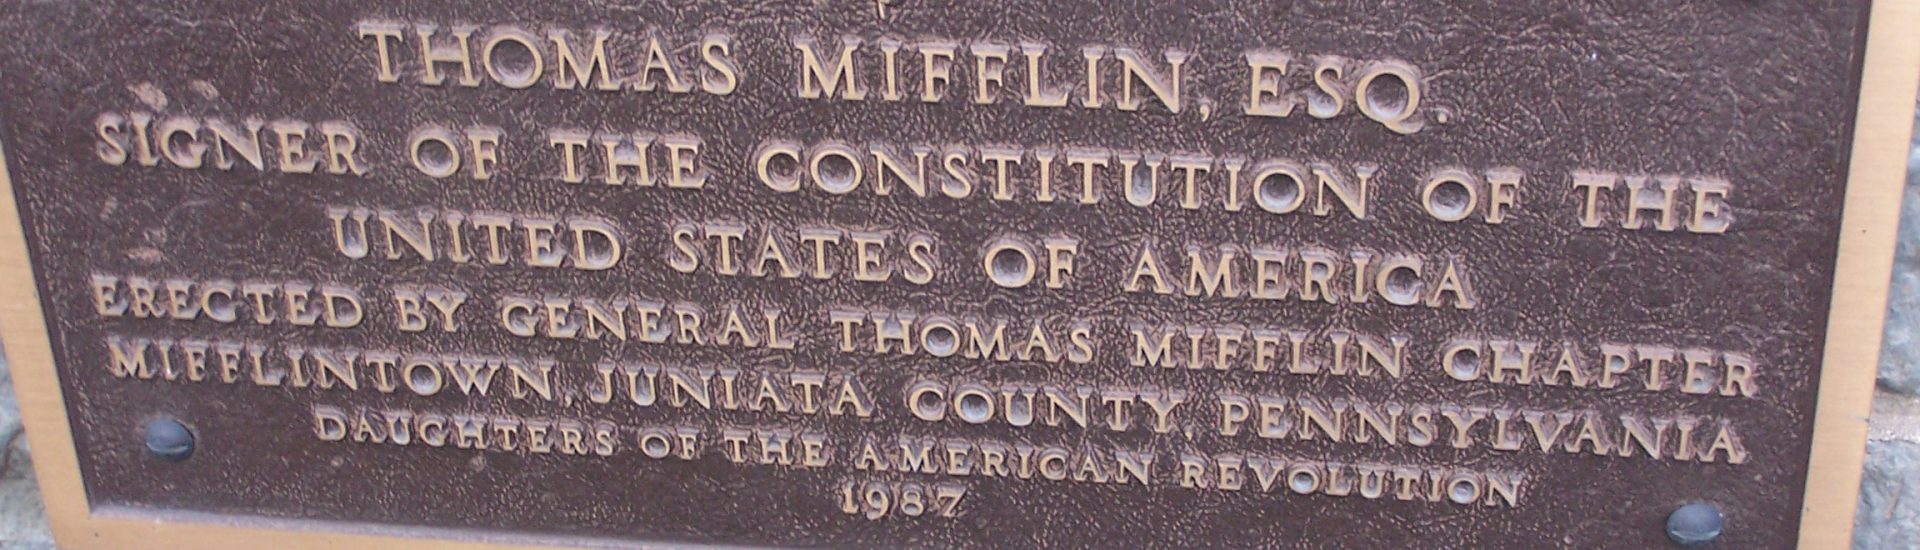 Thomas Mifflin